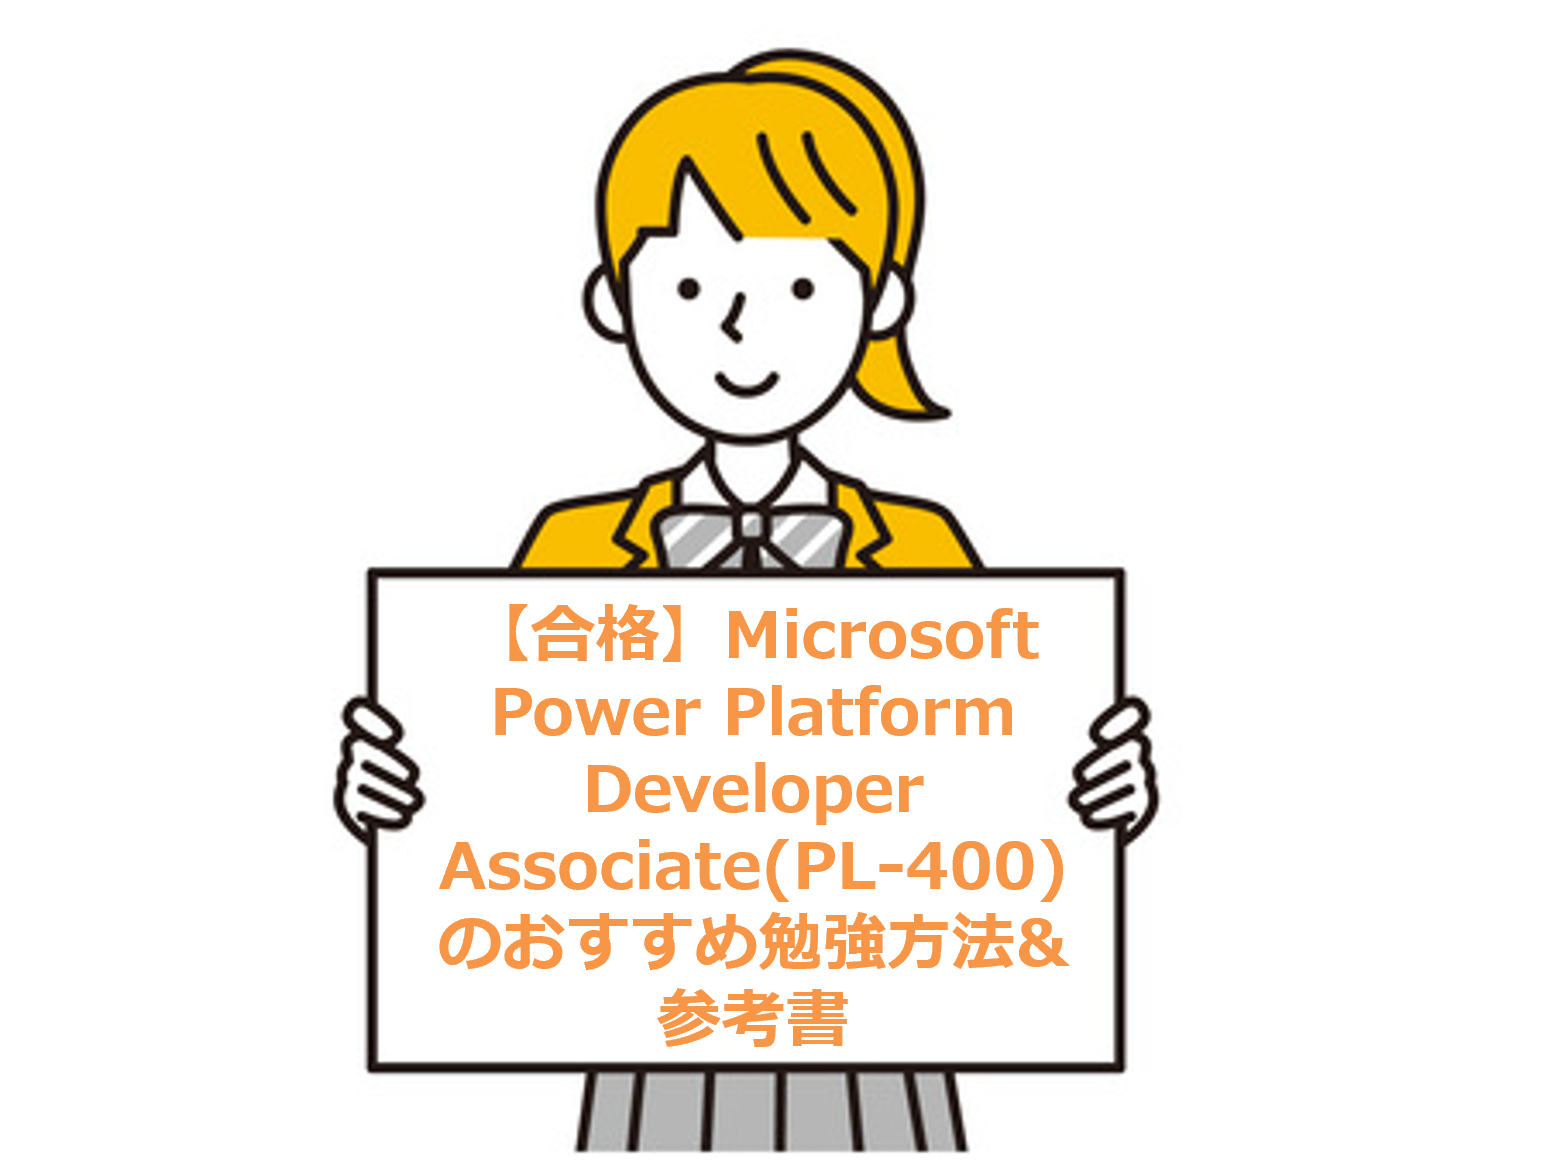 【合格】Microsoft Power Platform Developer Associate(PL-400)のおすすめ勉強方法&参考書